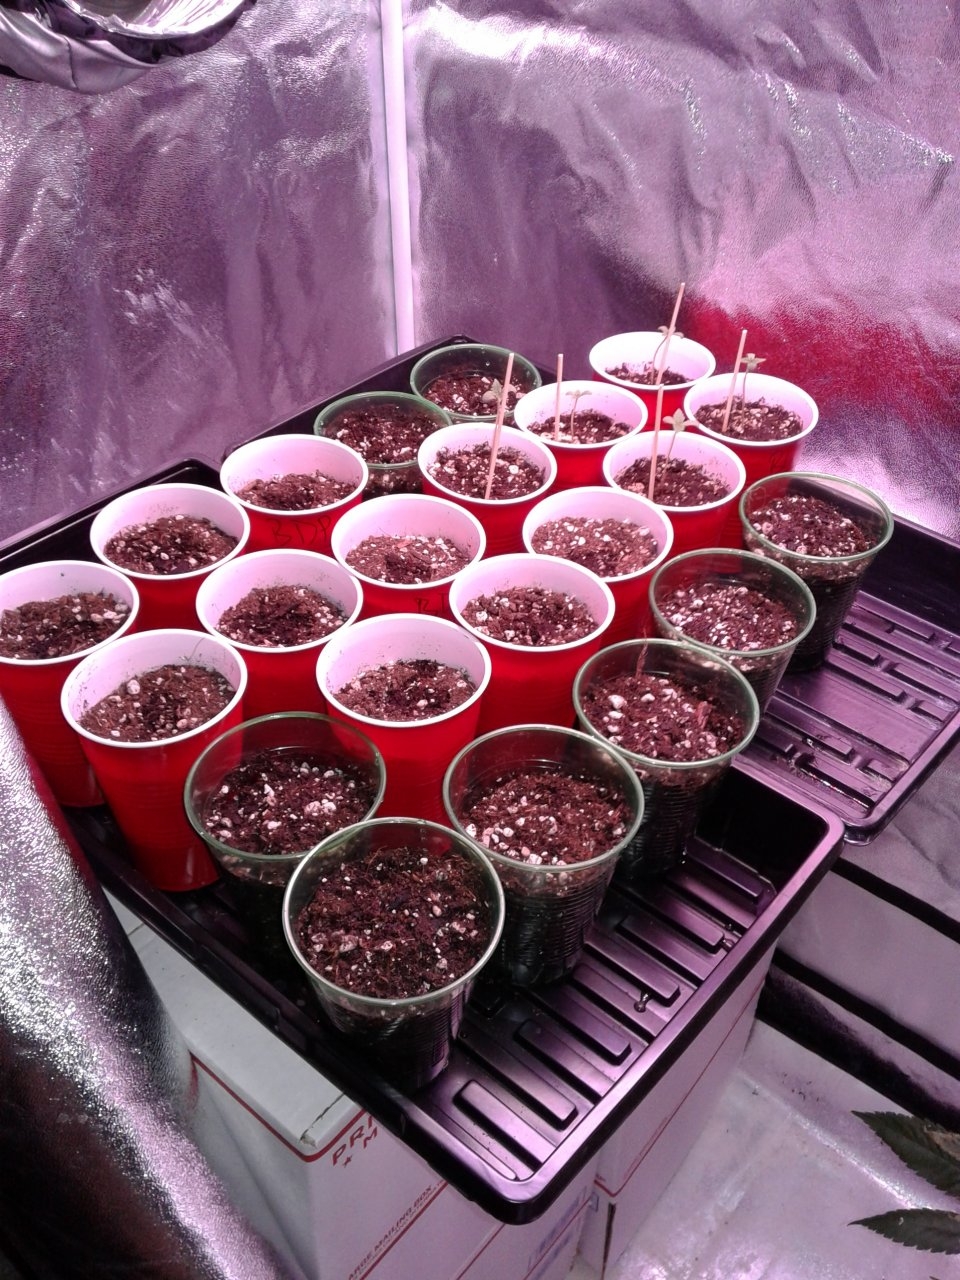 Seedlings galore!